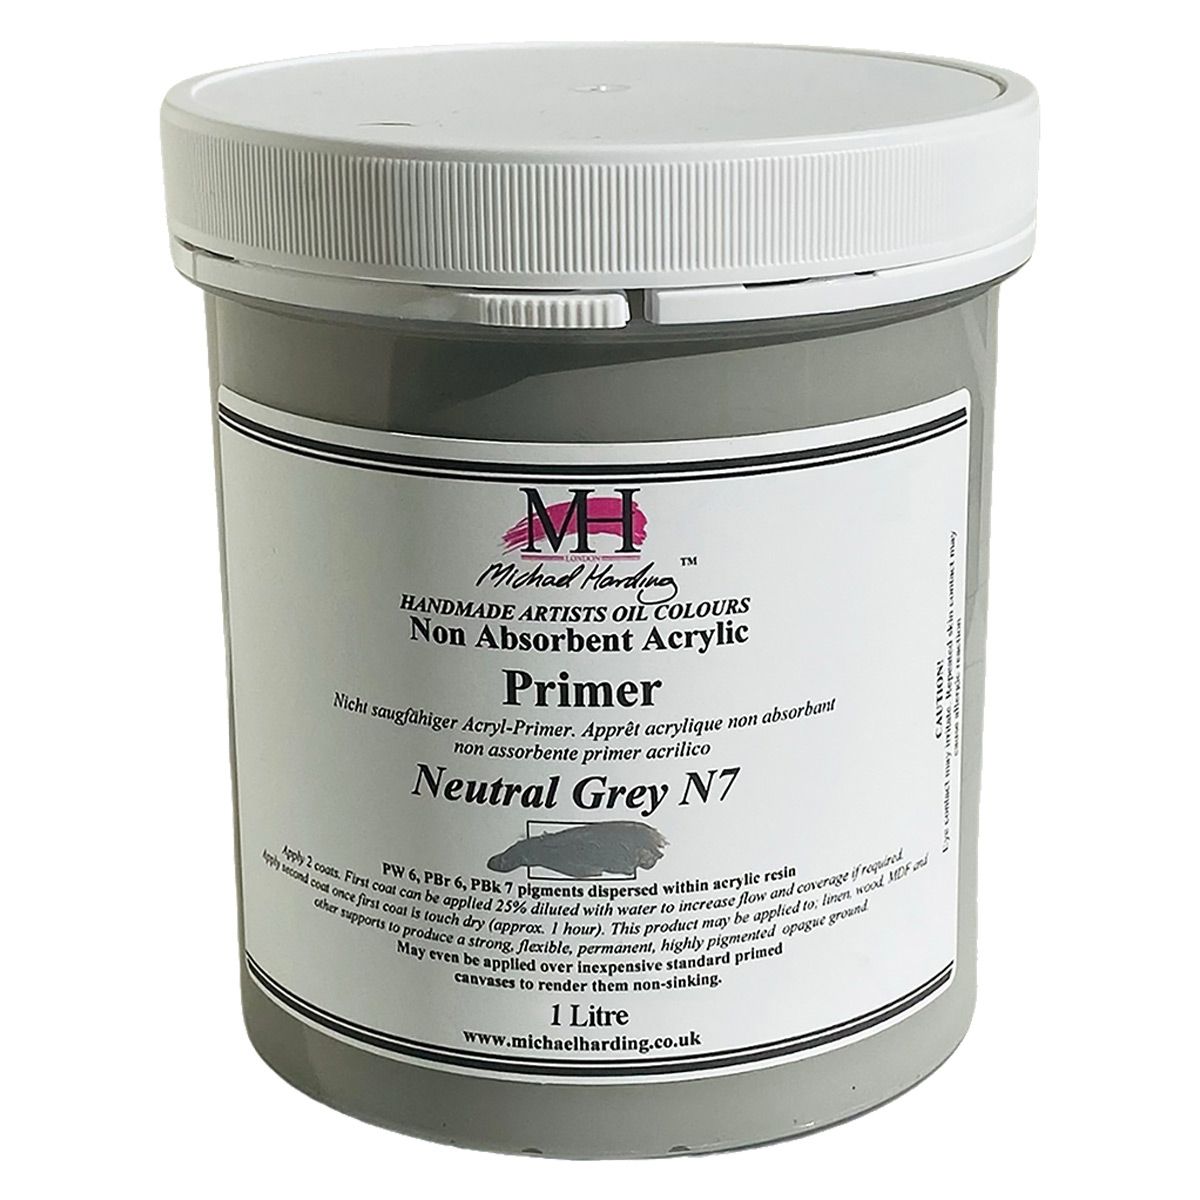 Non-Absorbent Acrylic Primer, Neutral Grey No.7 1 Litre